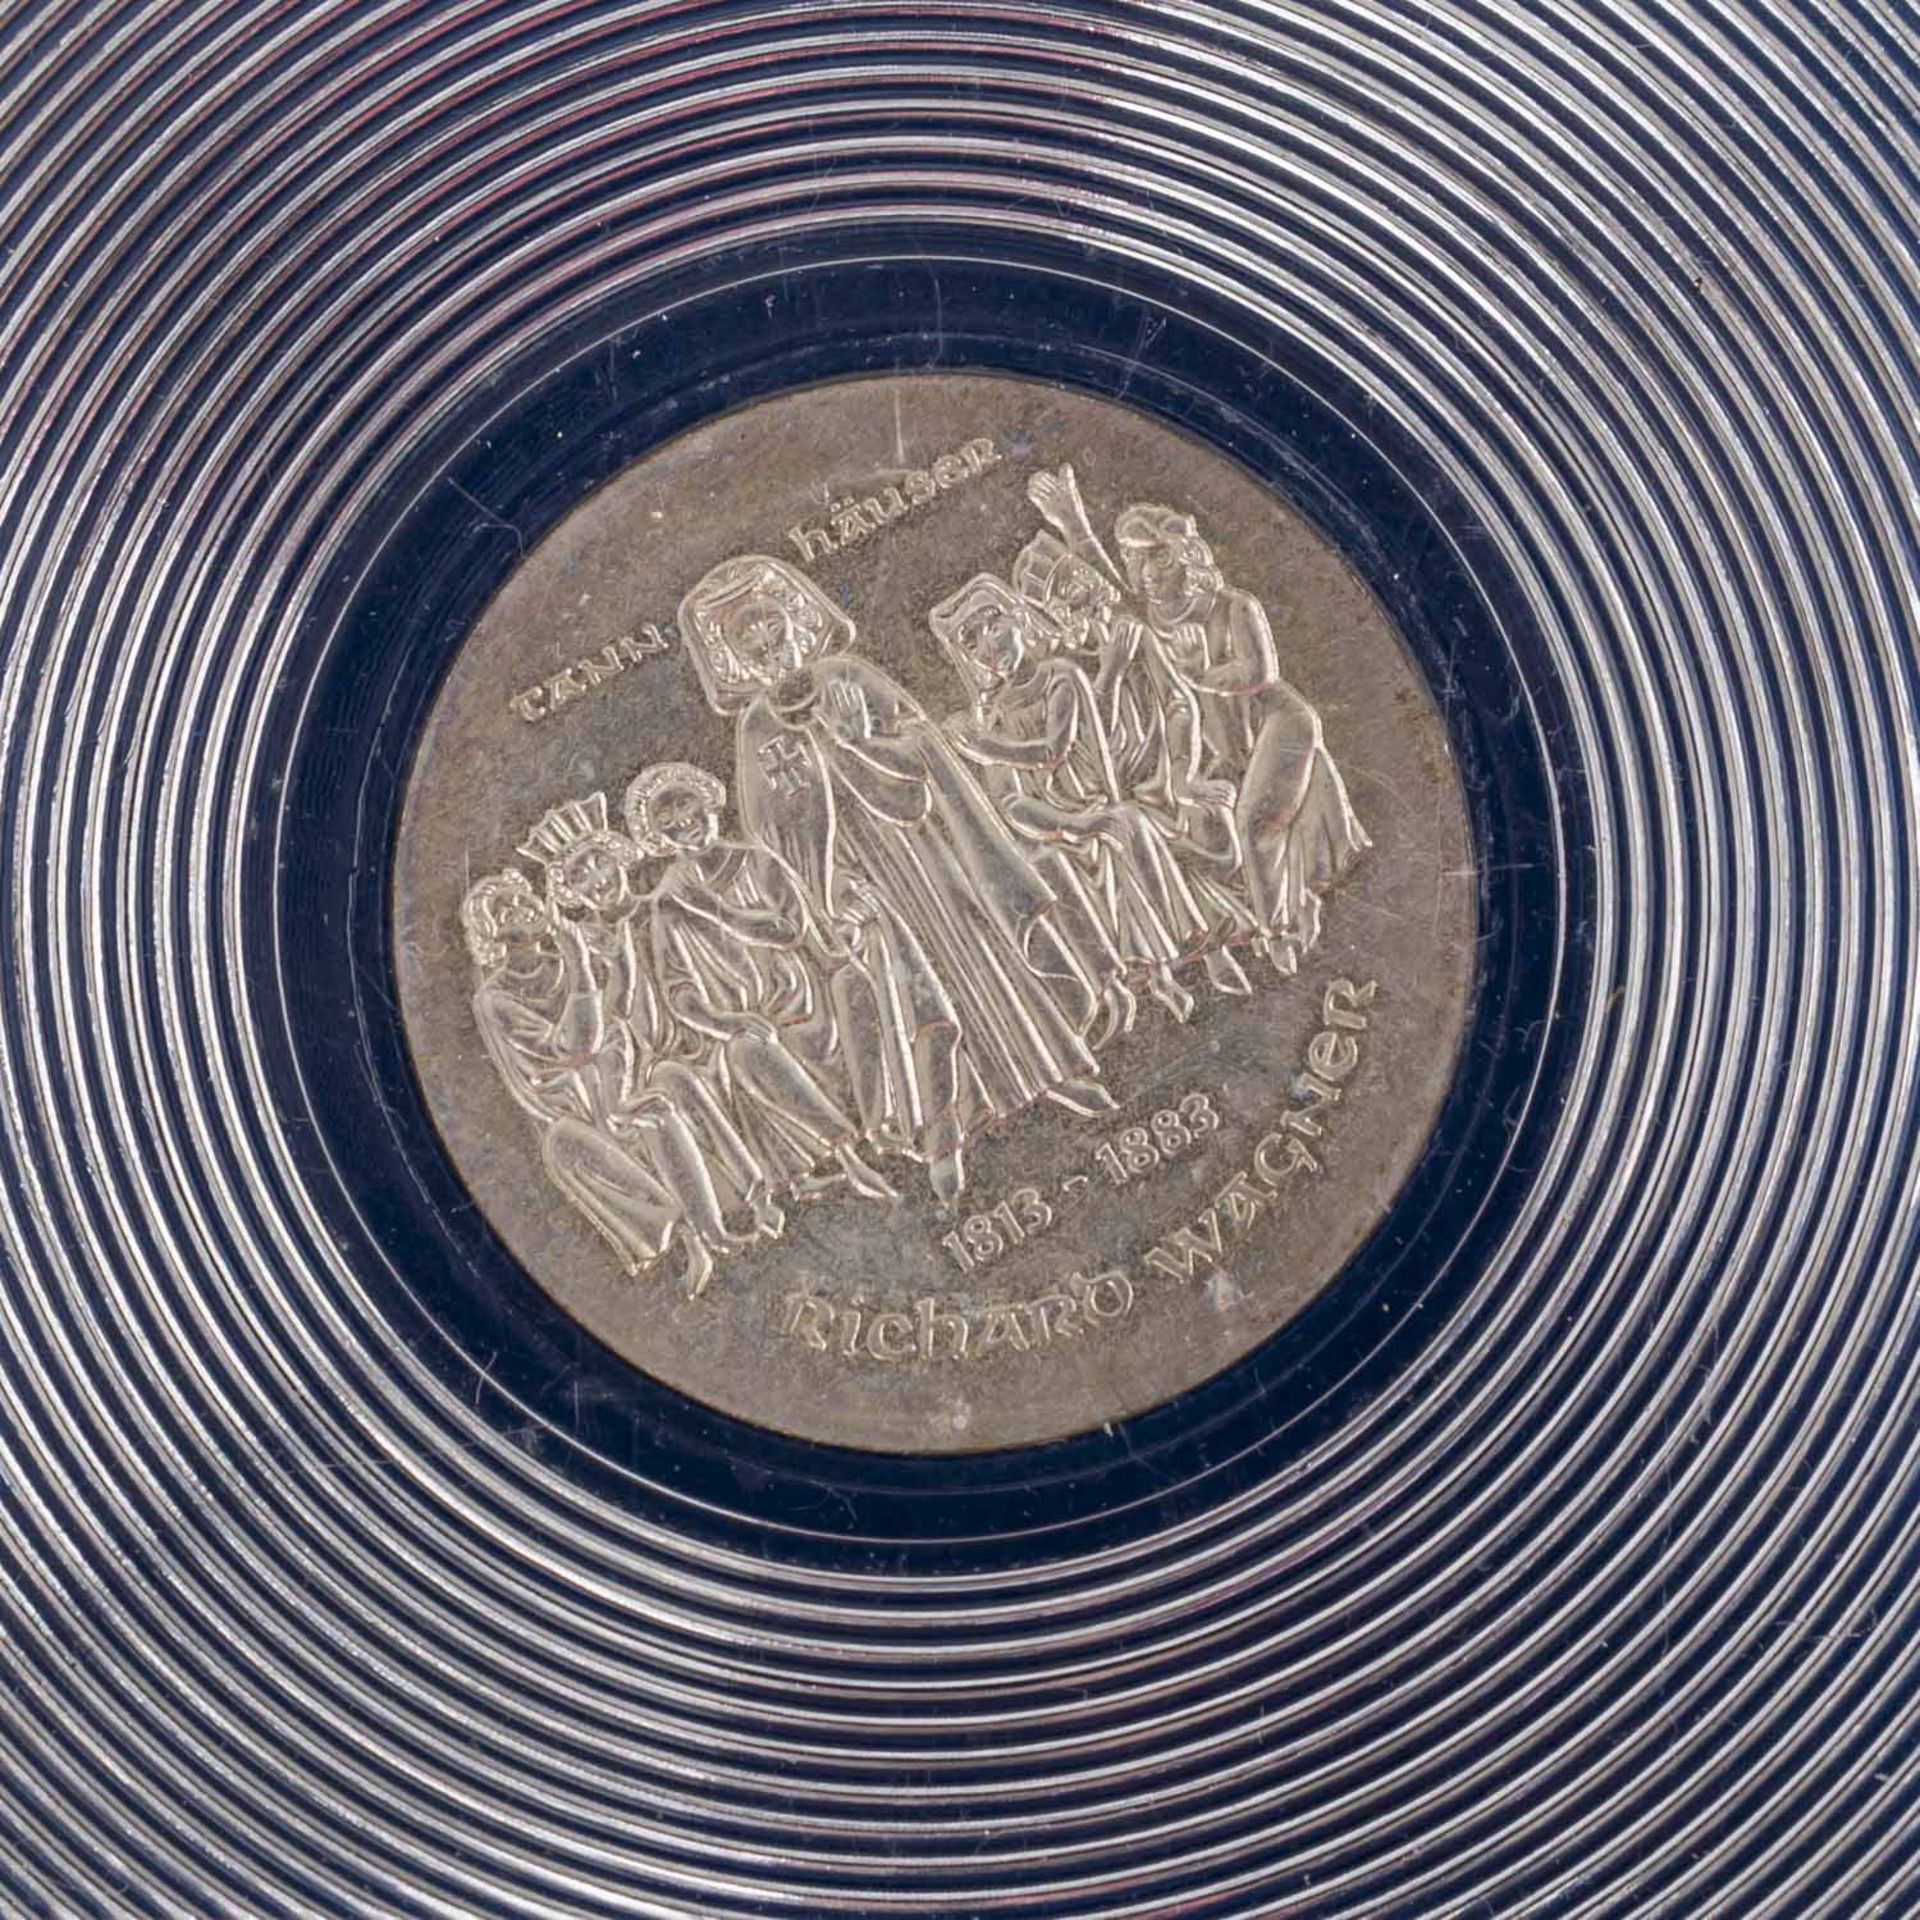 Gemischtes Lot mit Silber und etwas GOLDin Form von Schweuz 20 Franken Vreneli 1935 LB und Türkei - Bild 4 aus 13